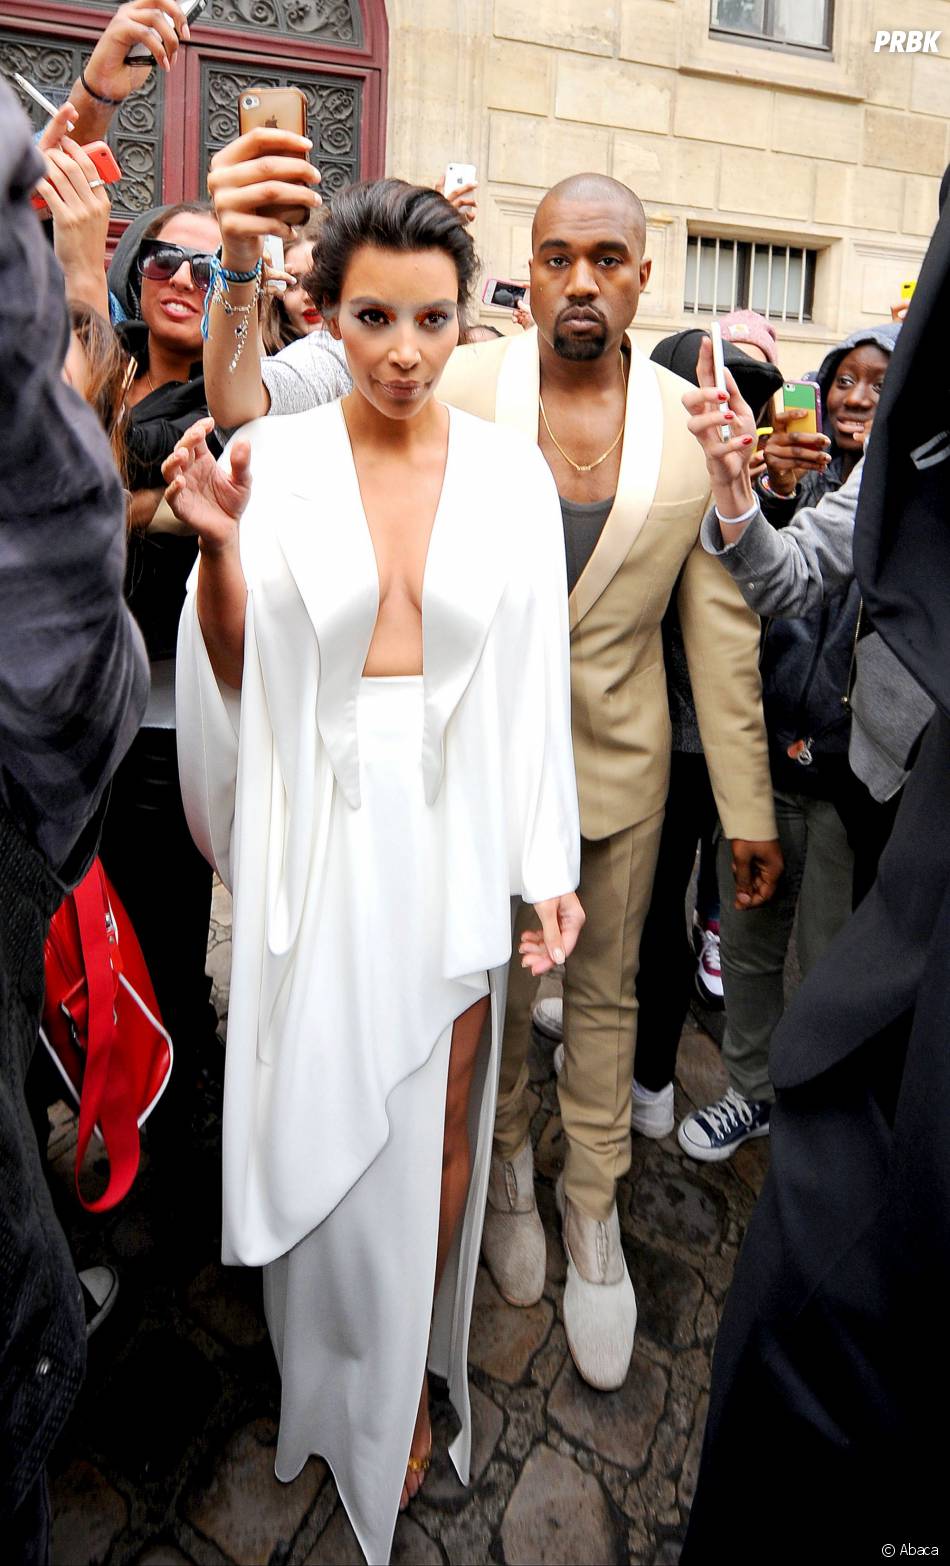  Kim Kardashian très décolletée avant son mariage, le 23 mai 2014 à Paris 